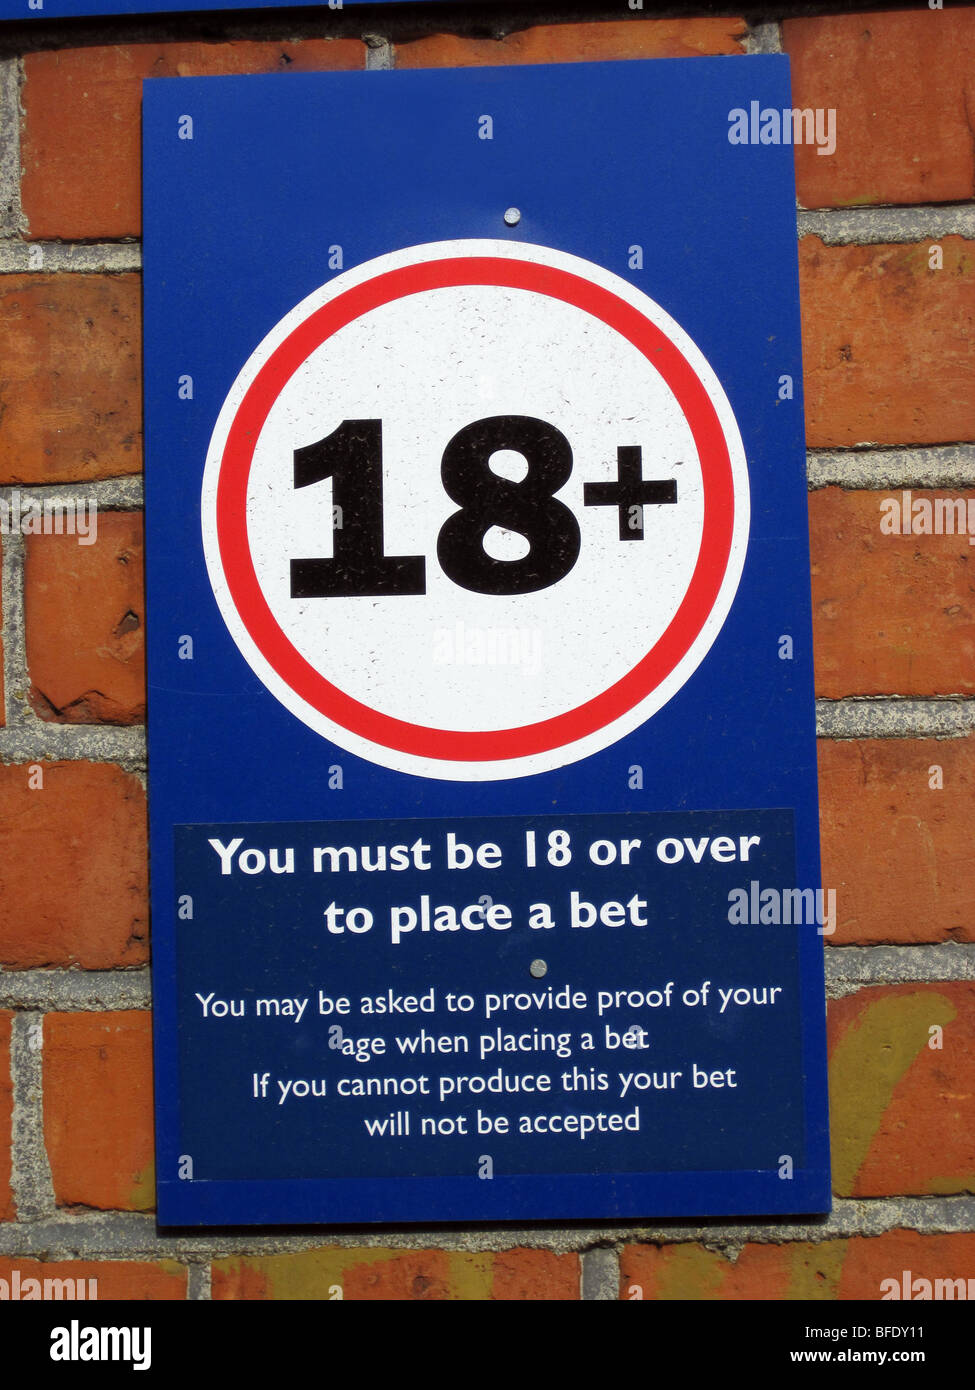 18 + Zeichen auf dem Ascot Racecourse zeigen Alter begrenzen für Wetten auf Pferderennen in Ascot, England Stockfoto